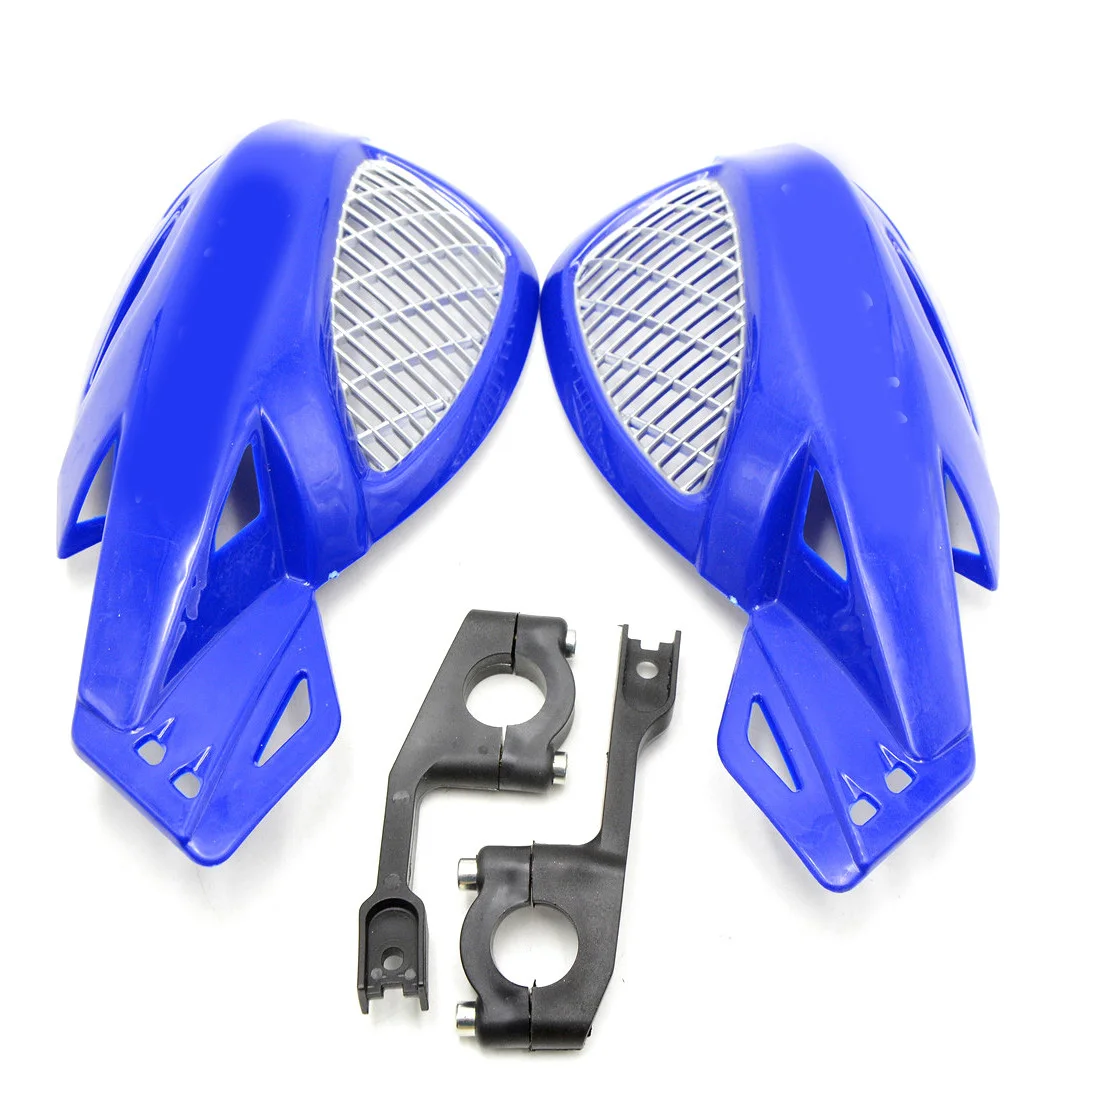 Фары для кроссовых и обычных мотоциклов 7/8 ''22mm руль тормозной защита рук для YAMAHA YZ250X YZ426F YZ450F YZ450FX YZ80 YZ85 - Цвет: Синий